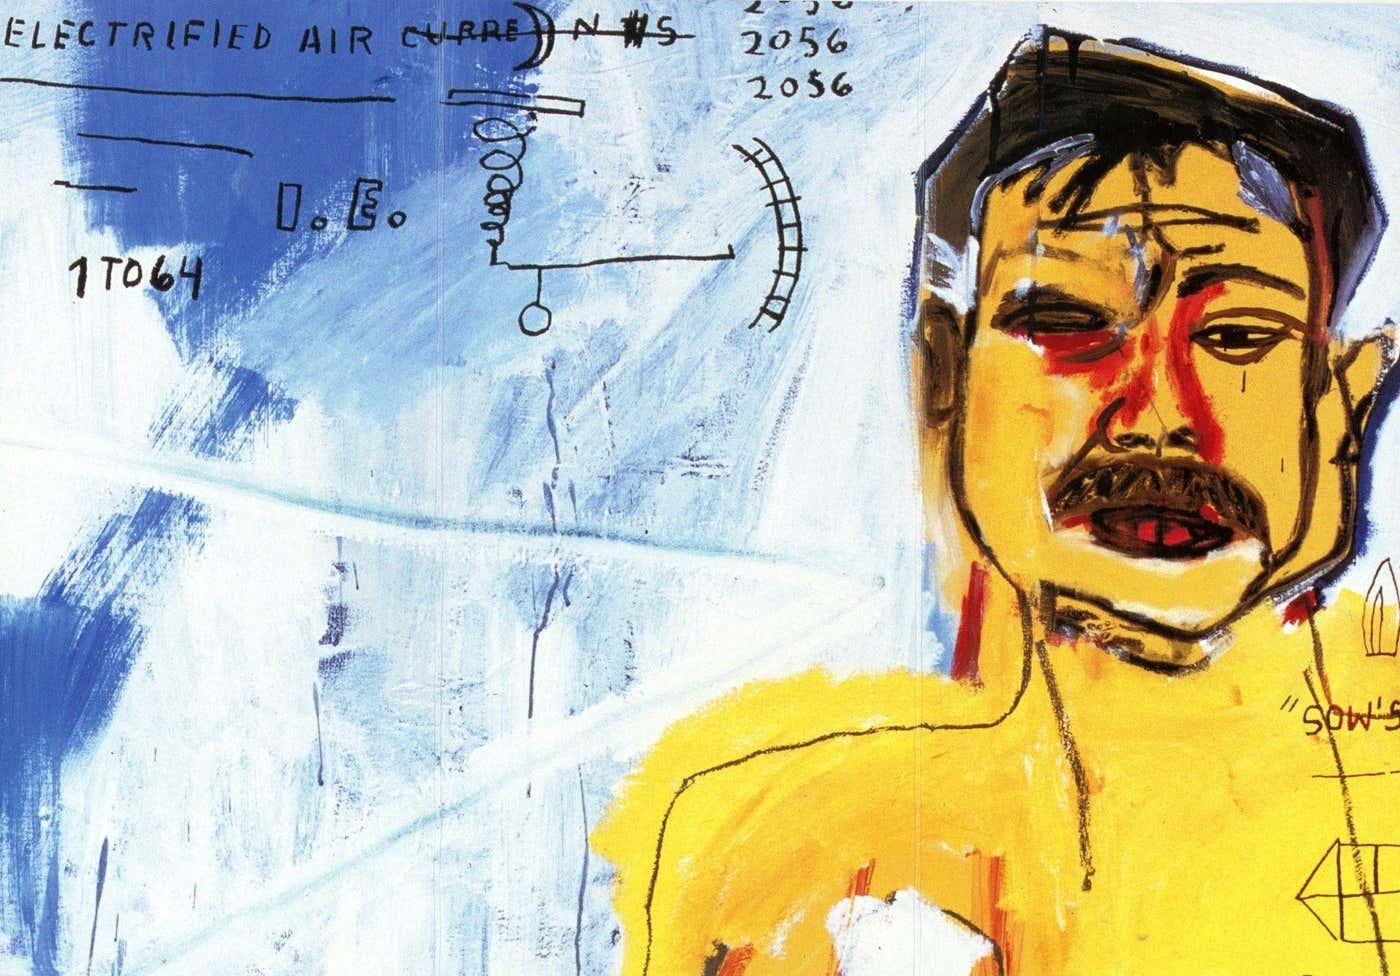 Jean-Michel Basquiat Galerie Enrico Navarra Paris 1999-2000:
Ein Satz von 2 seltenen Vintage-Basquiat-Ankündigungskarten, die anlässlich der Veröffentlichung(en) von: 

Jean-Michel Basquiat, Galerie Enrico Navarra Paris, Sommer 2000. 

Jean-Michel